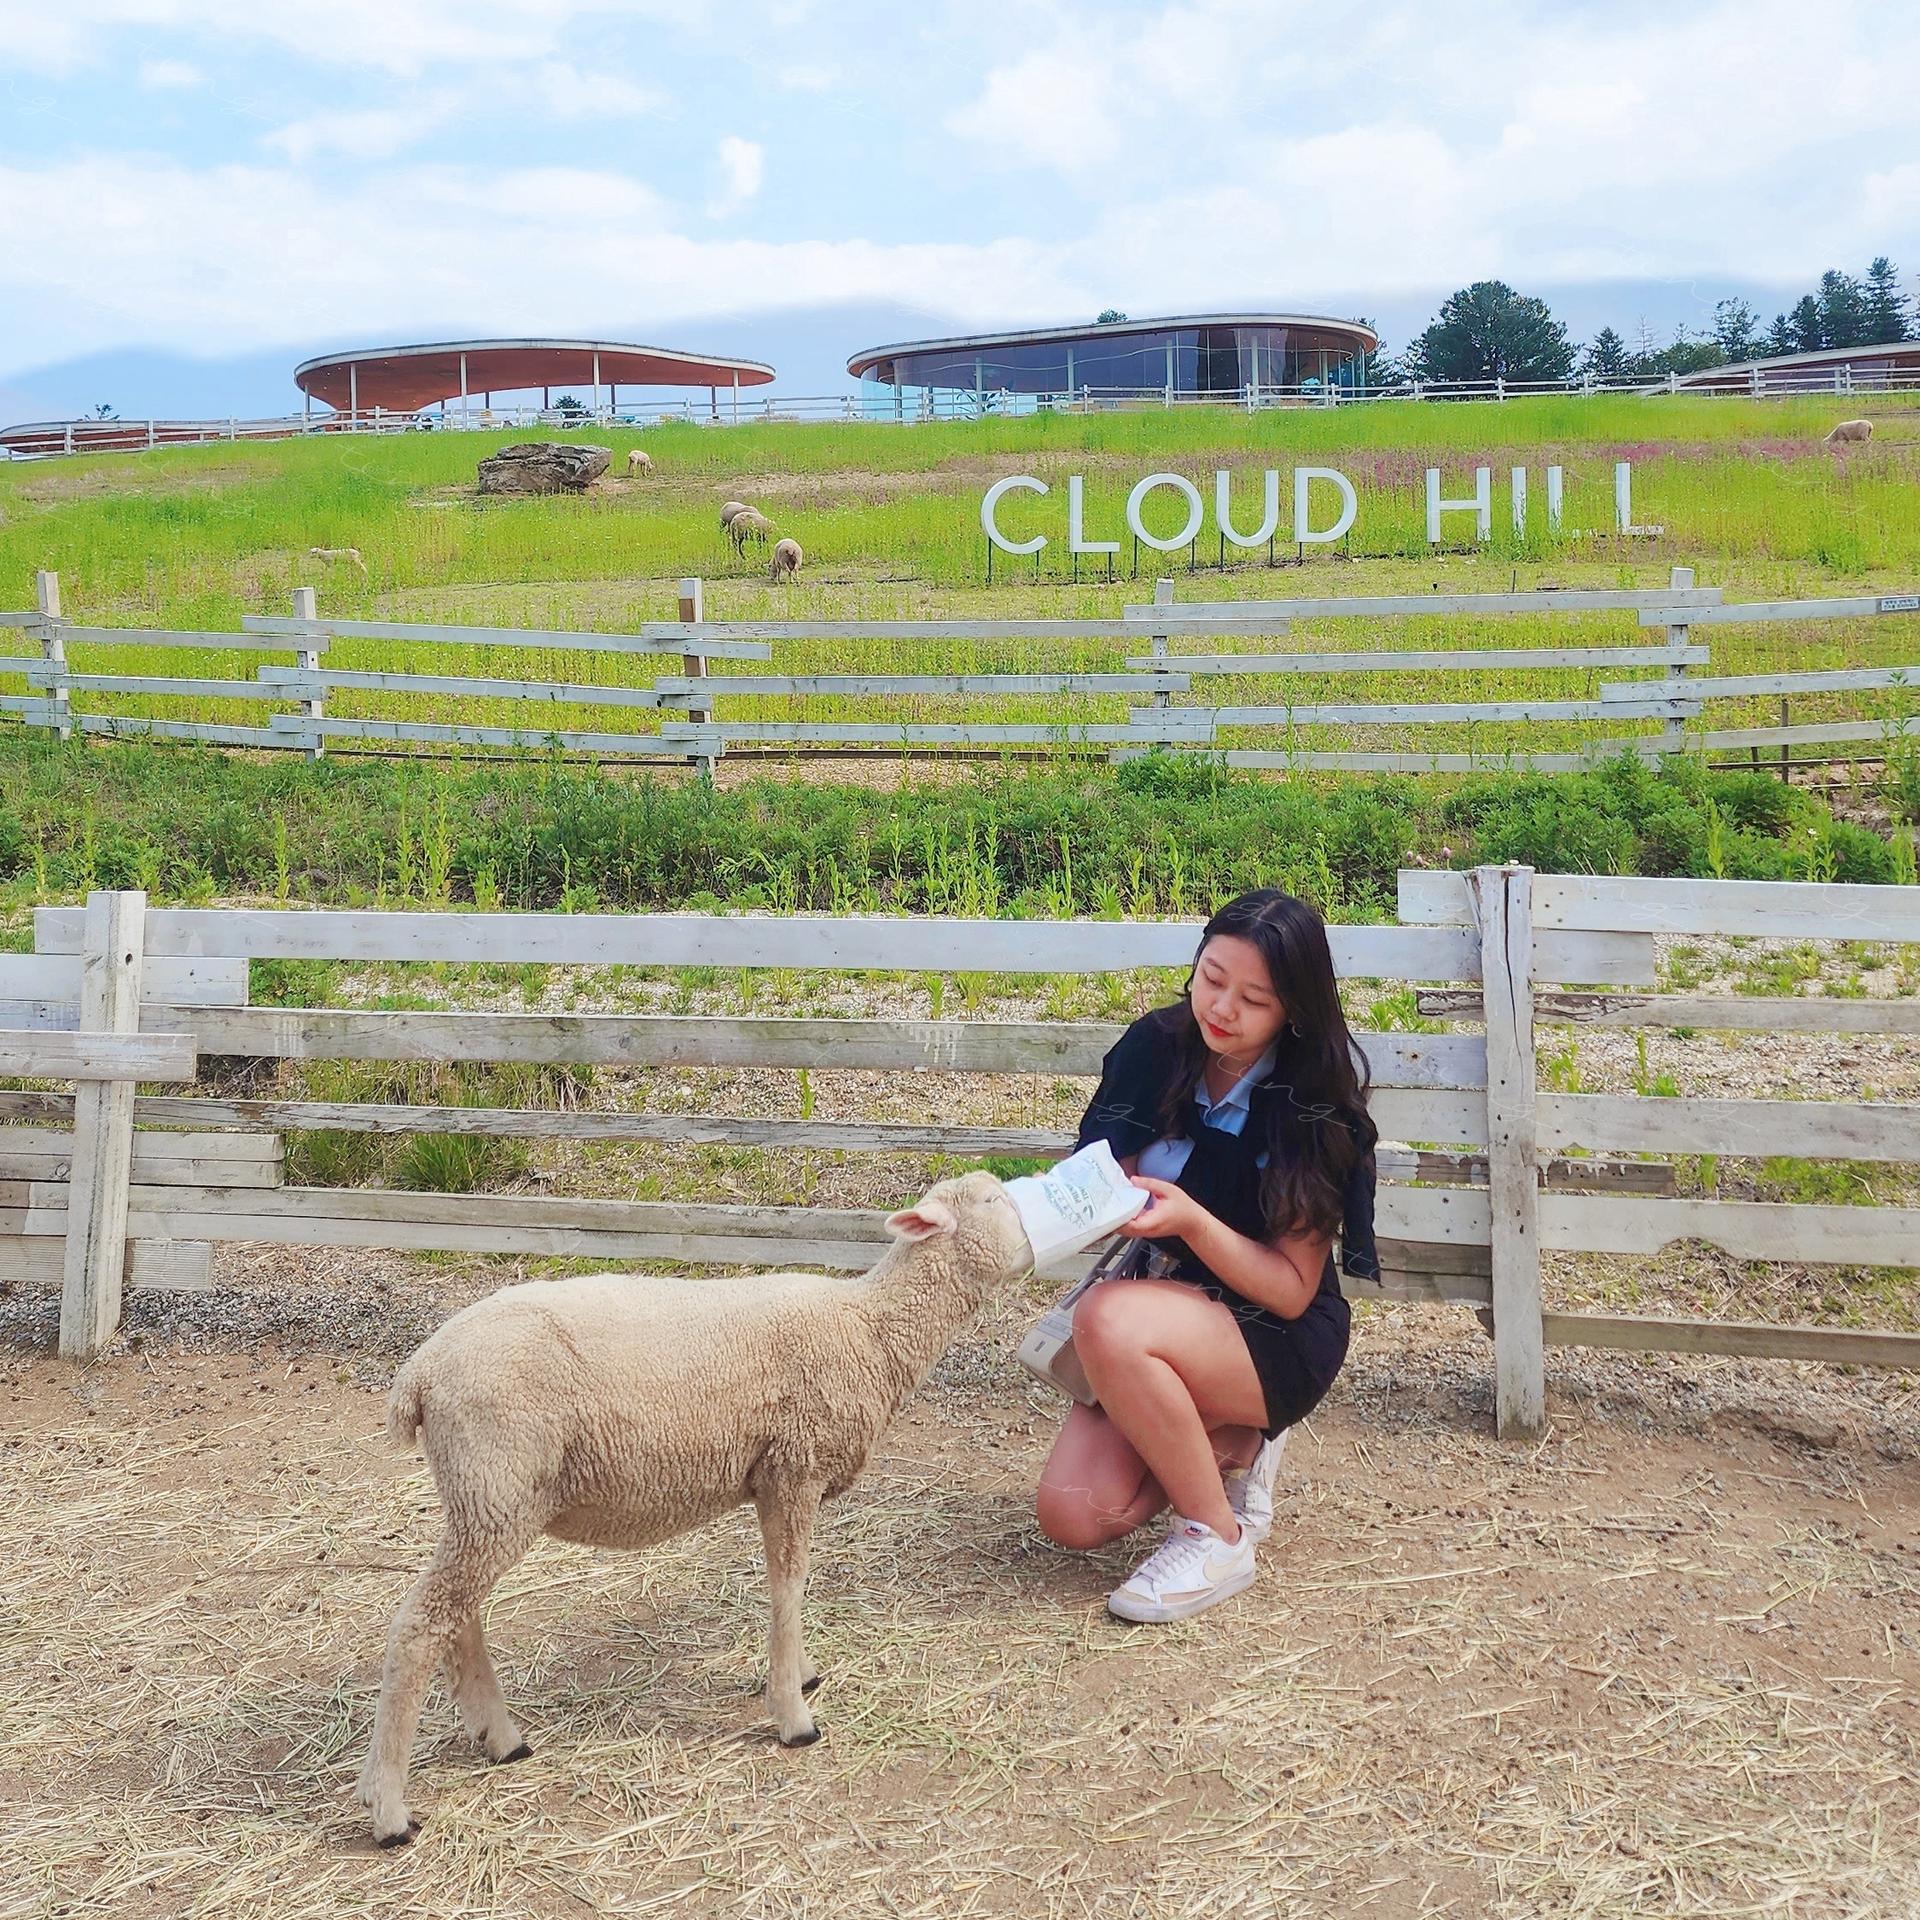 แนะนำสถานที่ท่องเที่ยว: '가평' Sheep Farm และ Cloud Hill.